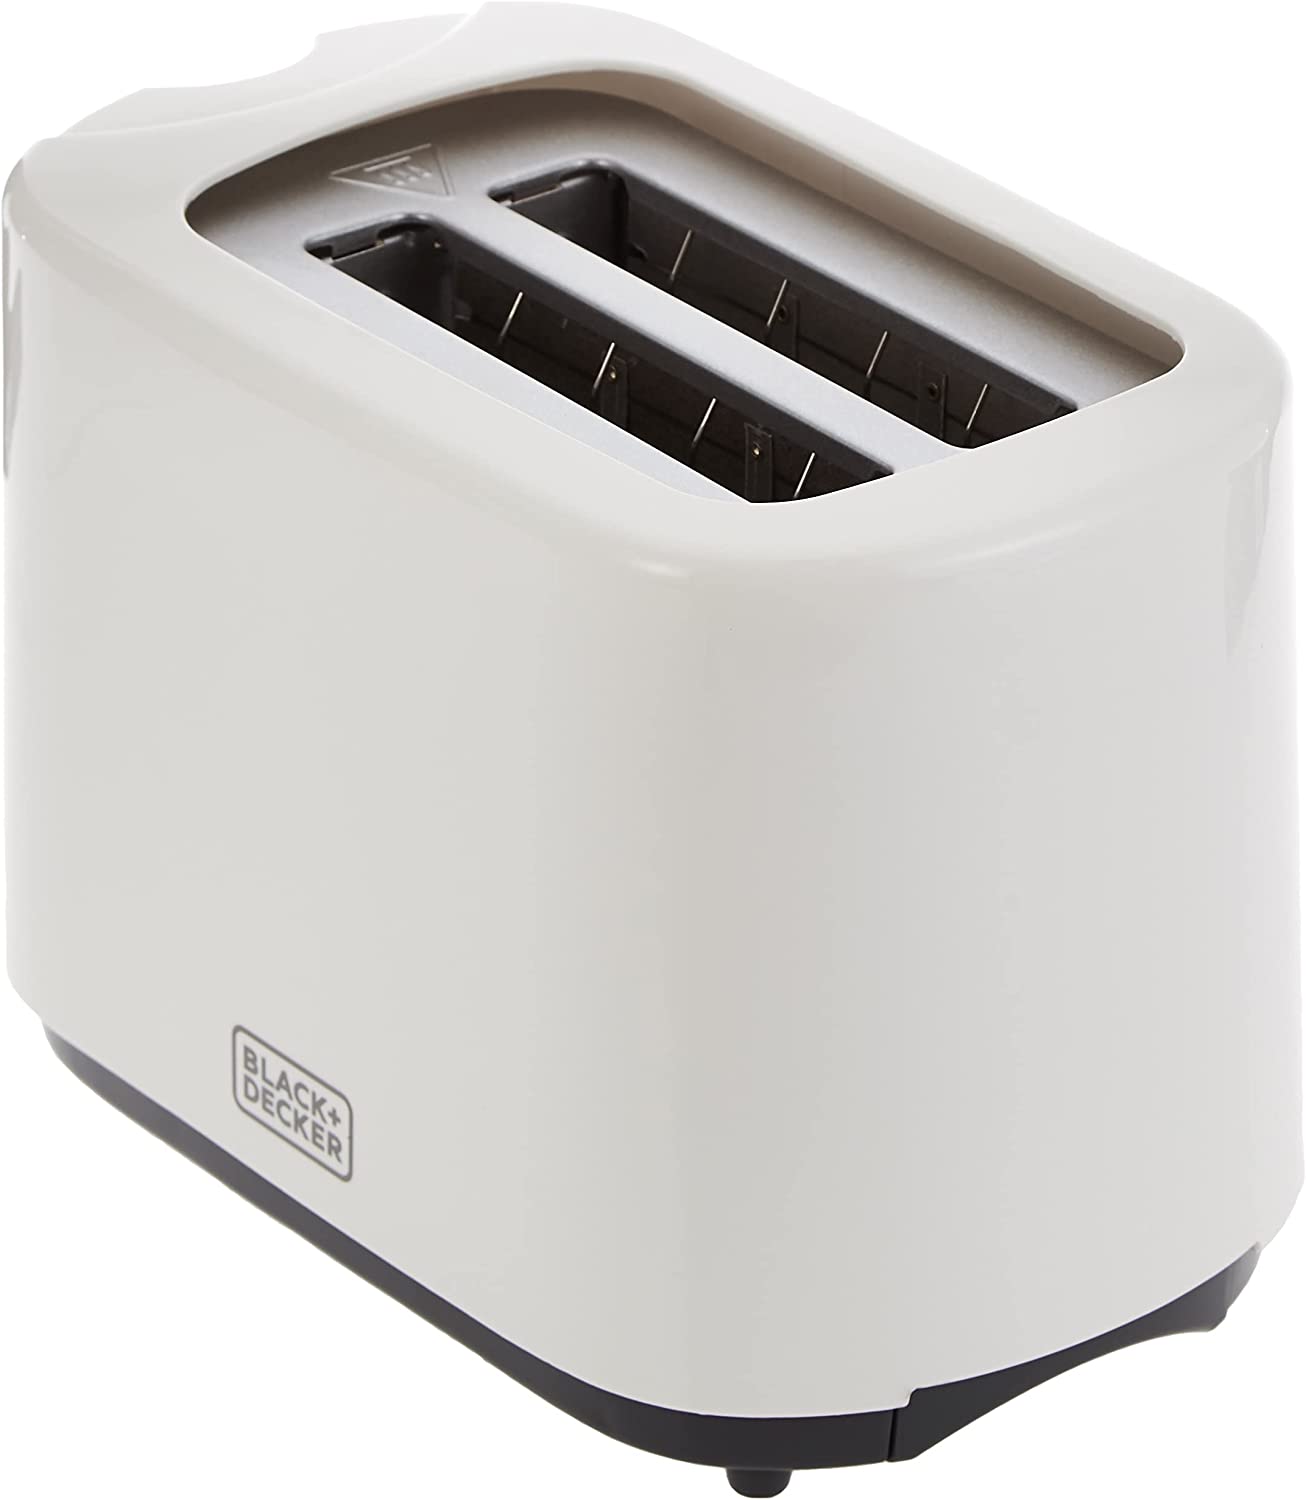 Black & Decker 2-slice toaster, 750 watts 